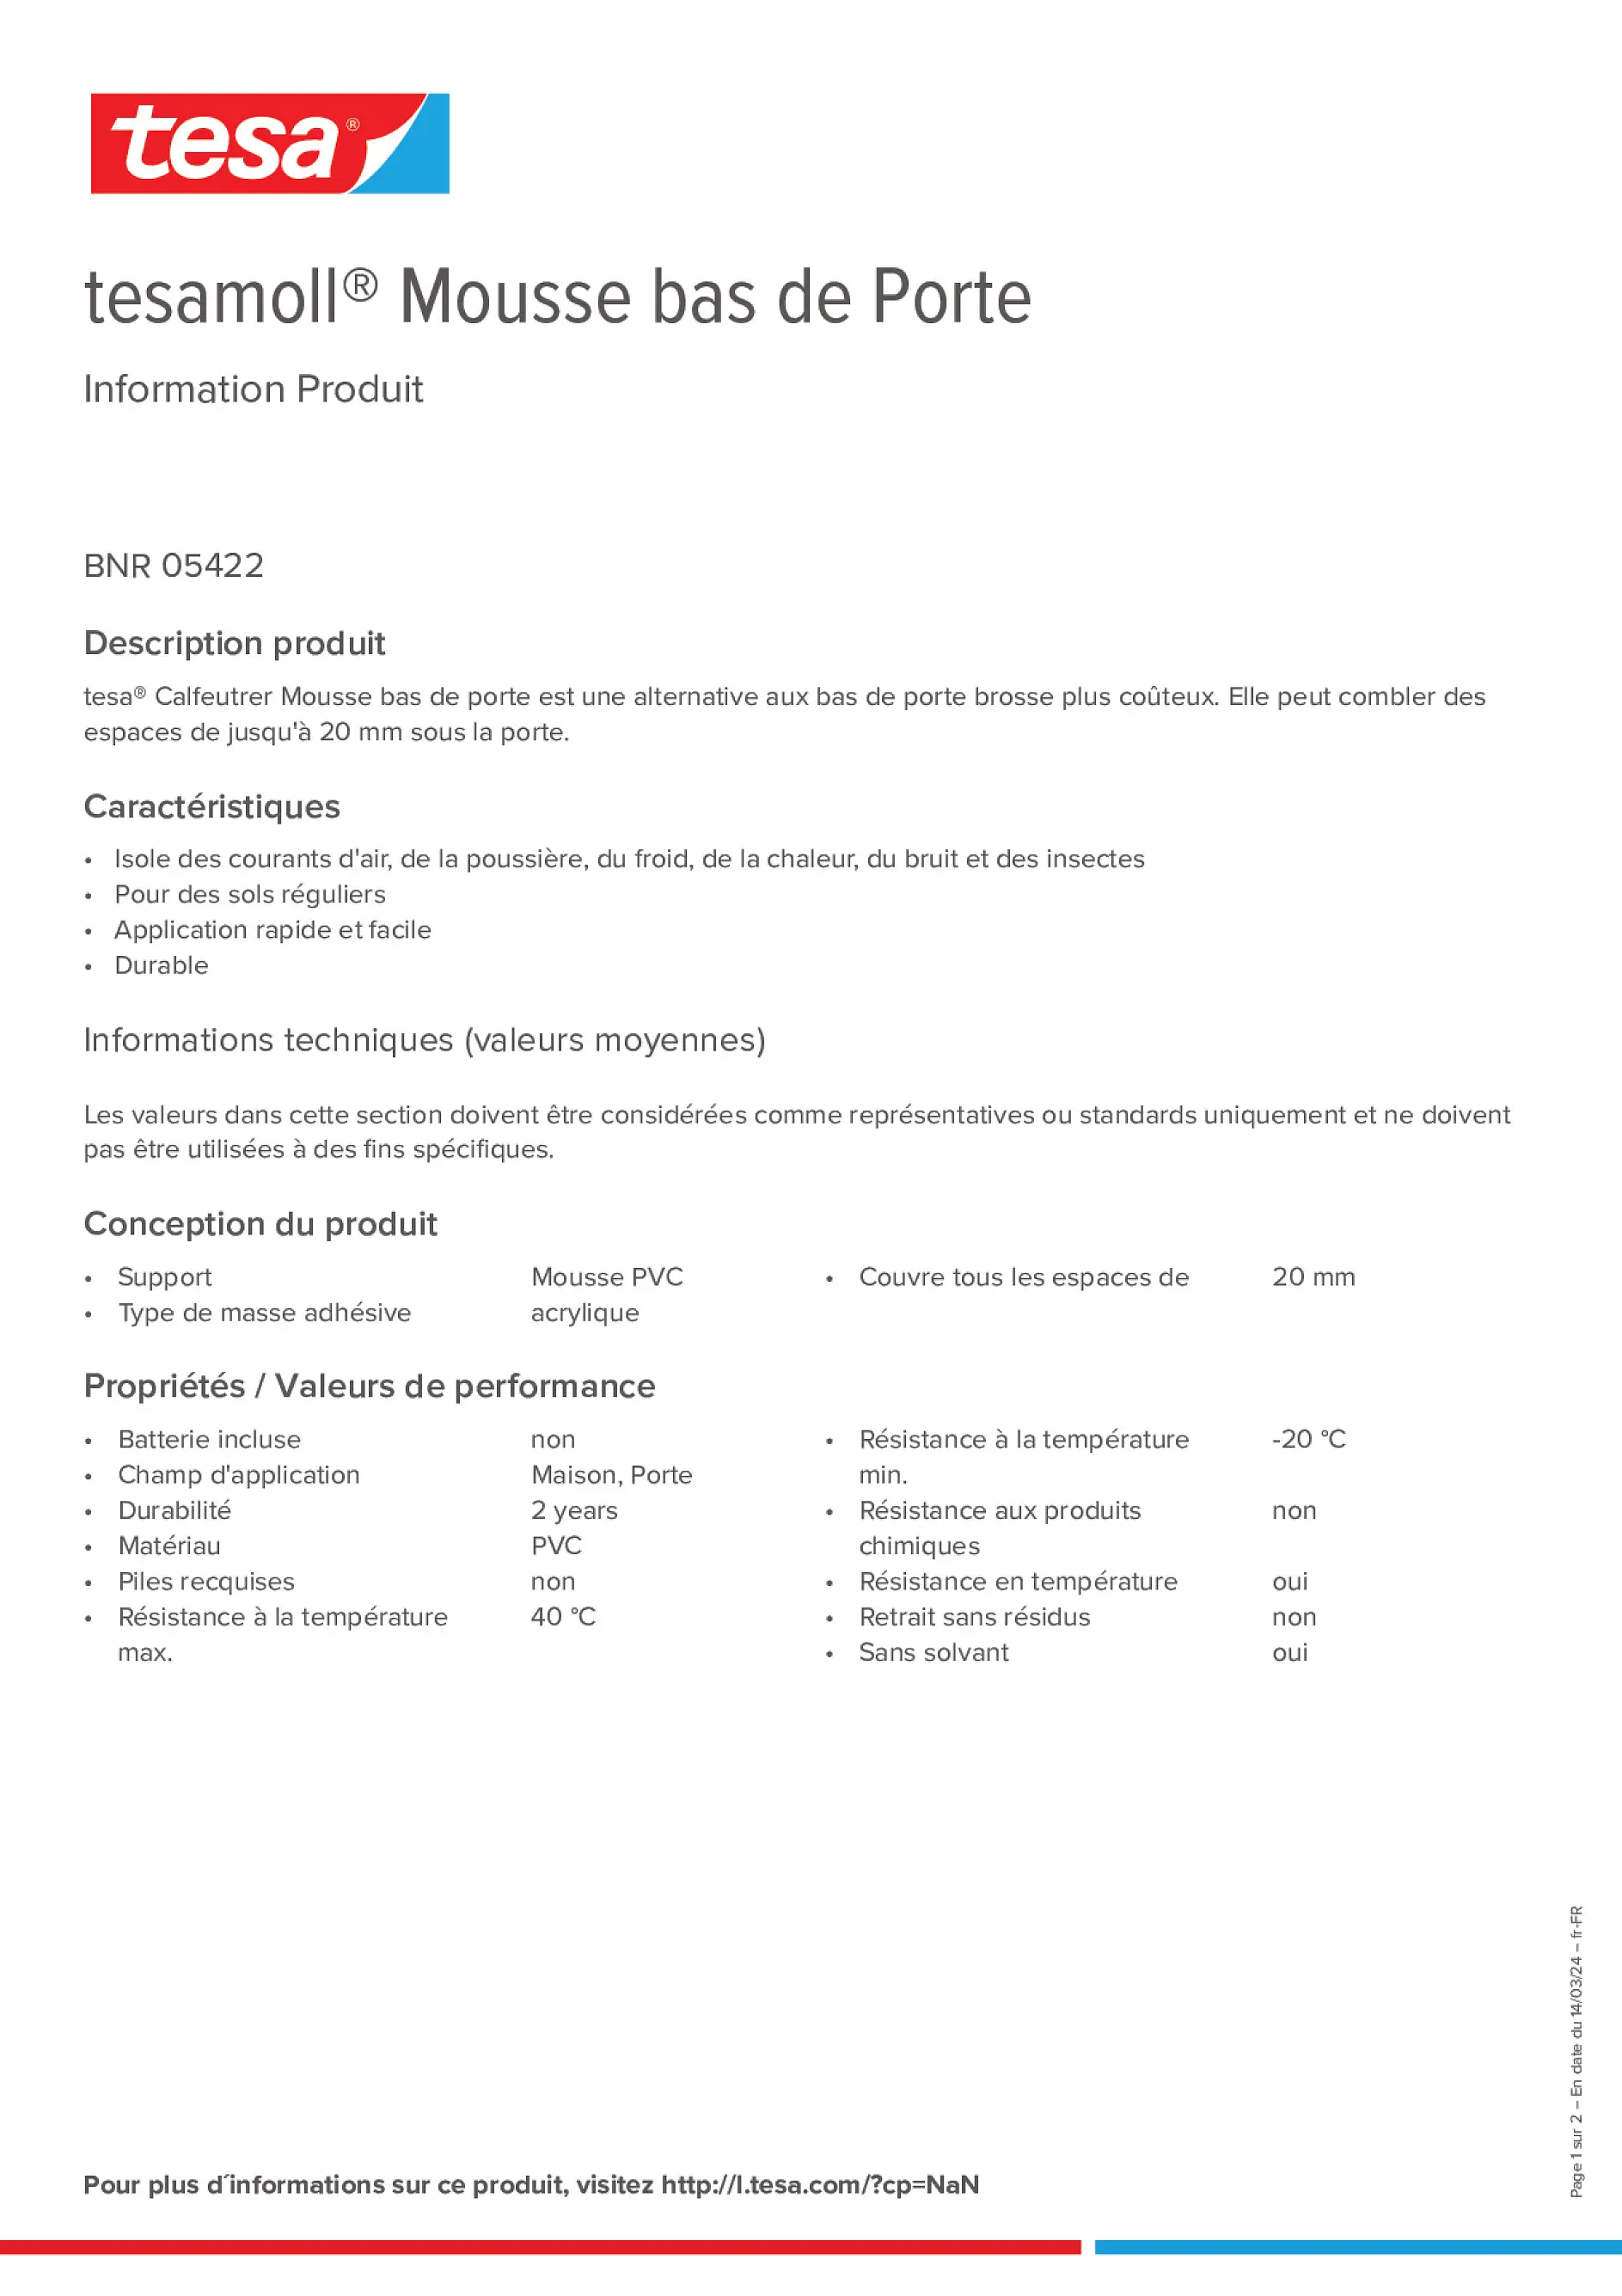 Product information_tesamoll® 05422_fr-FR